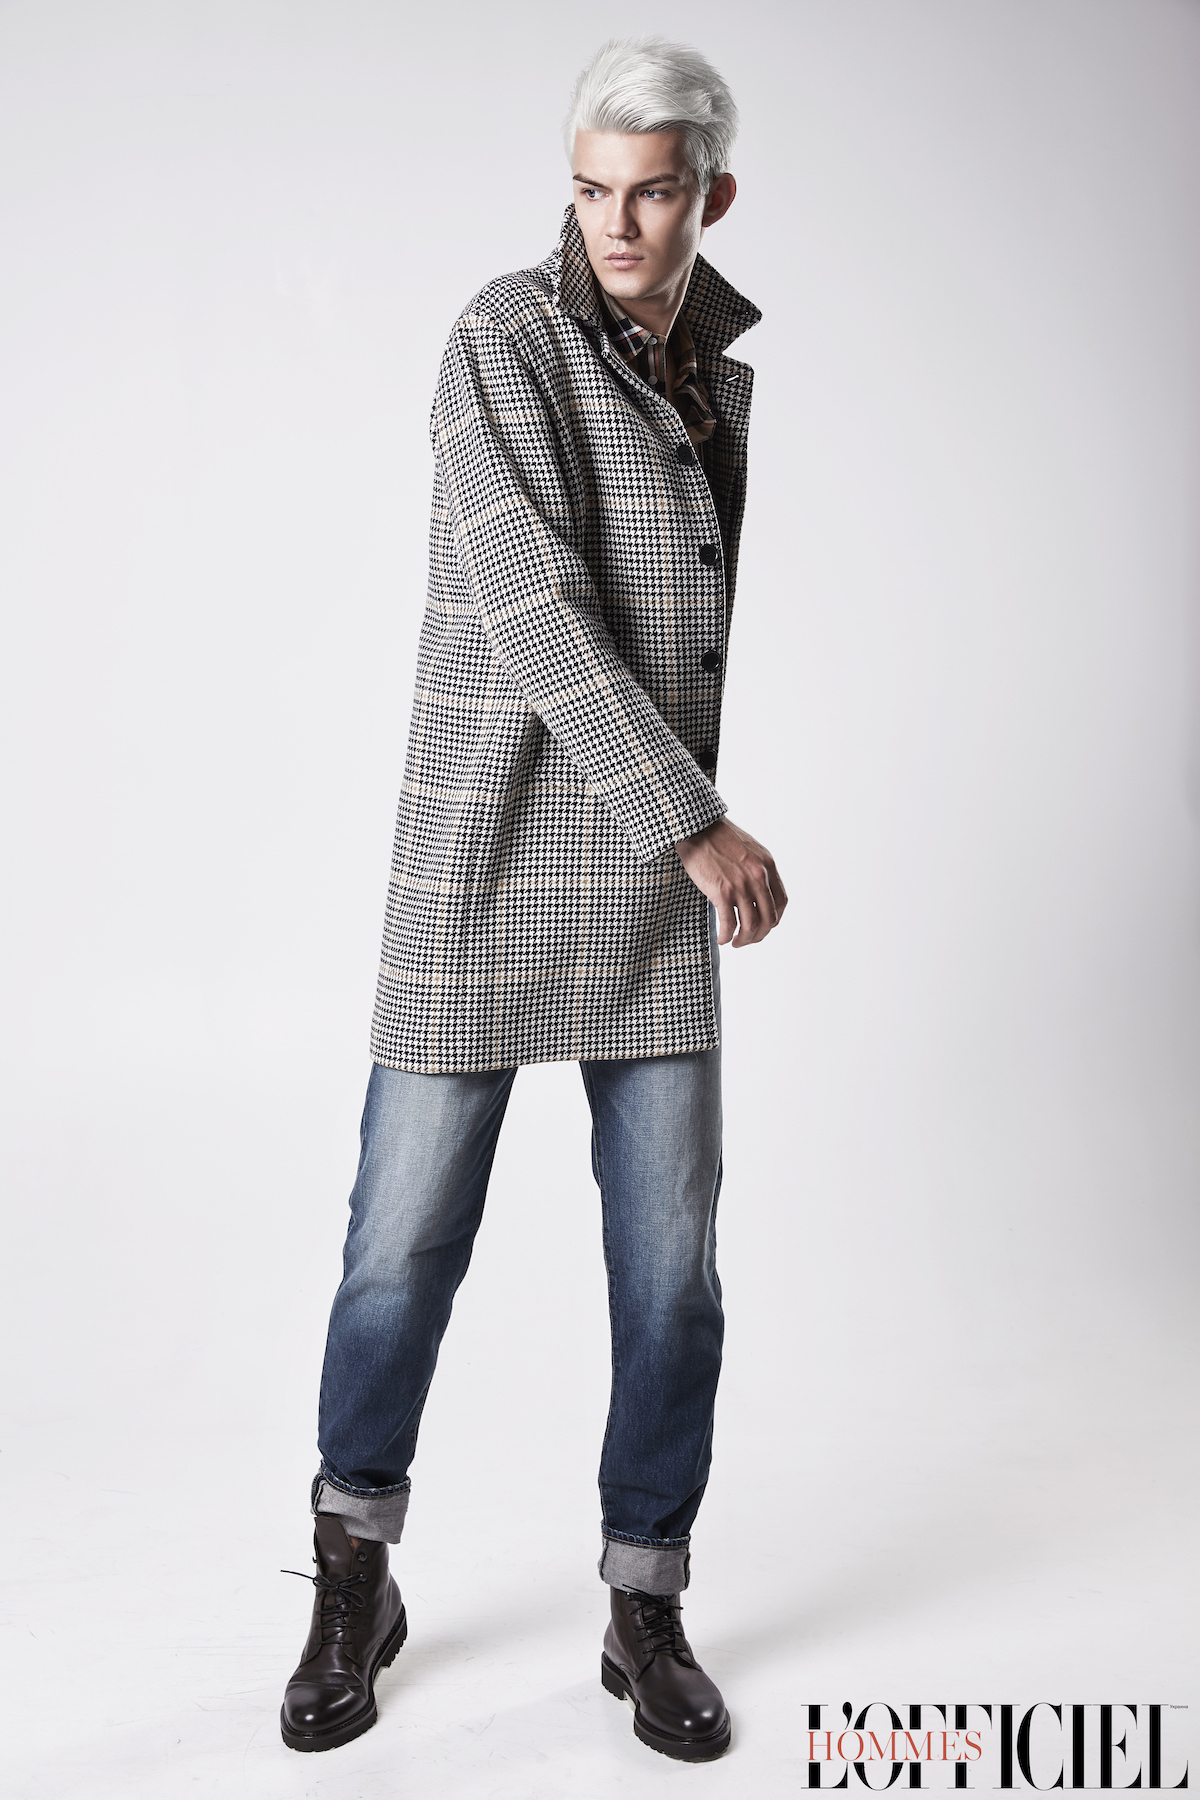 Пальто и рубашка – Sandro, джинсы Saint Laurent, обувь Doucal's